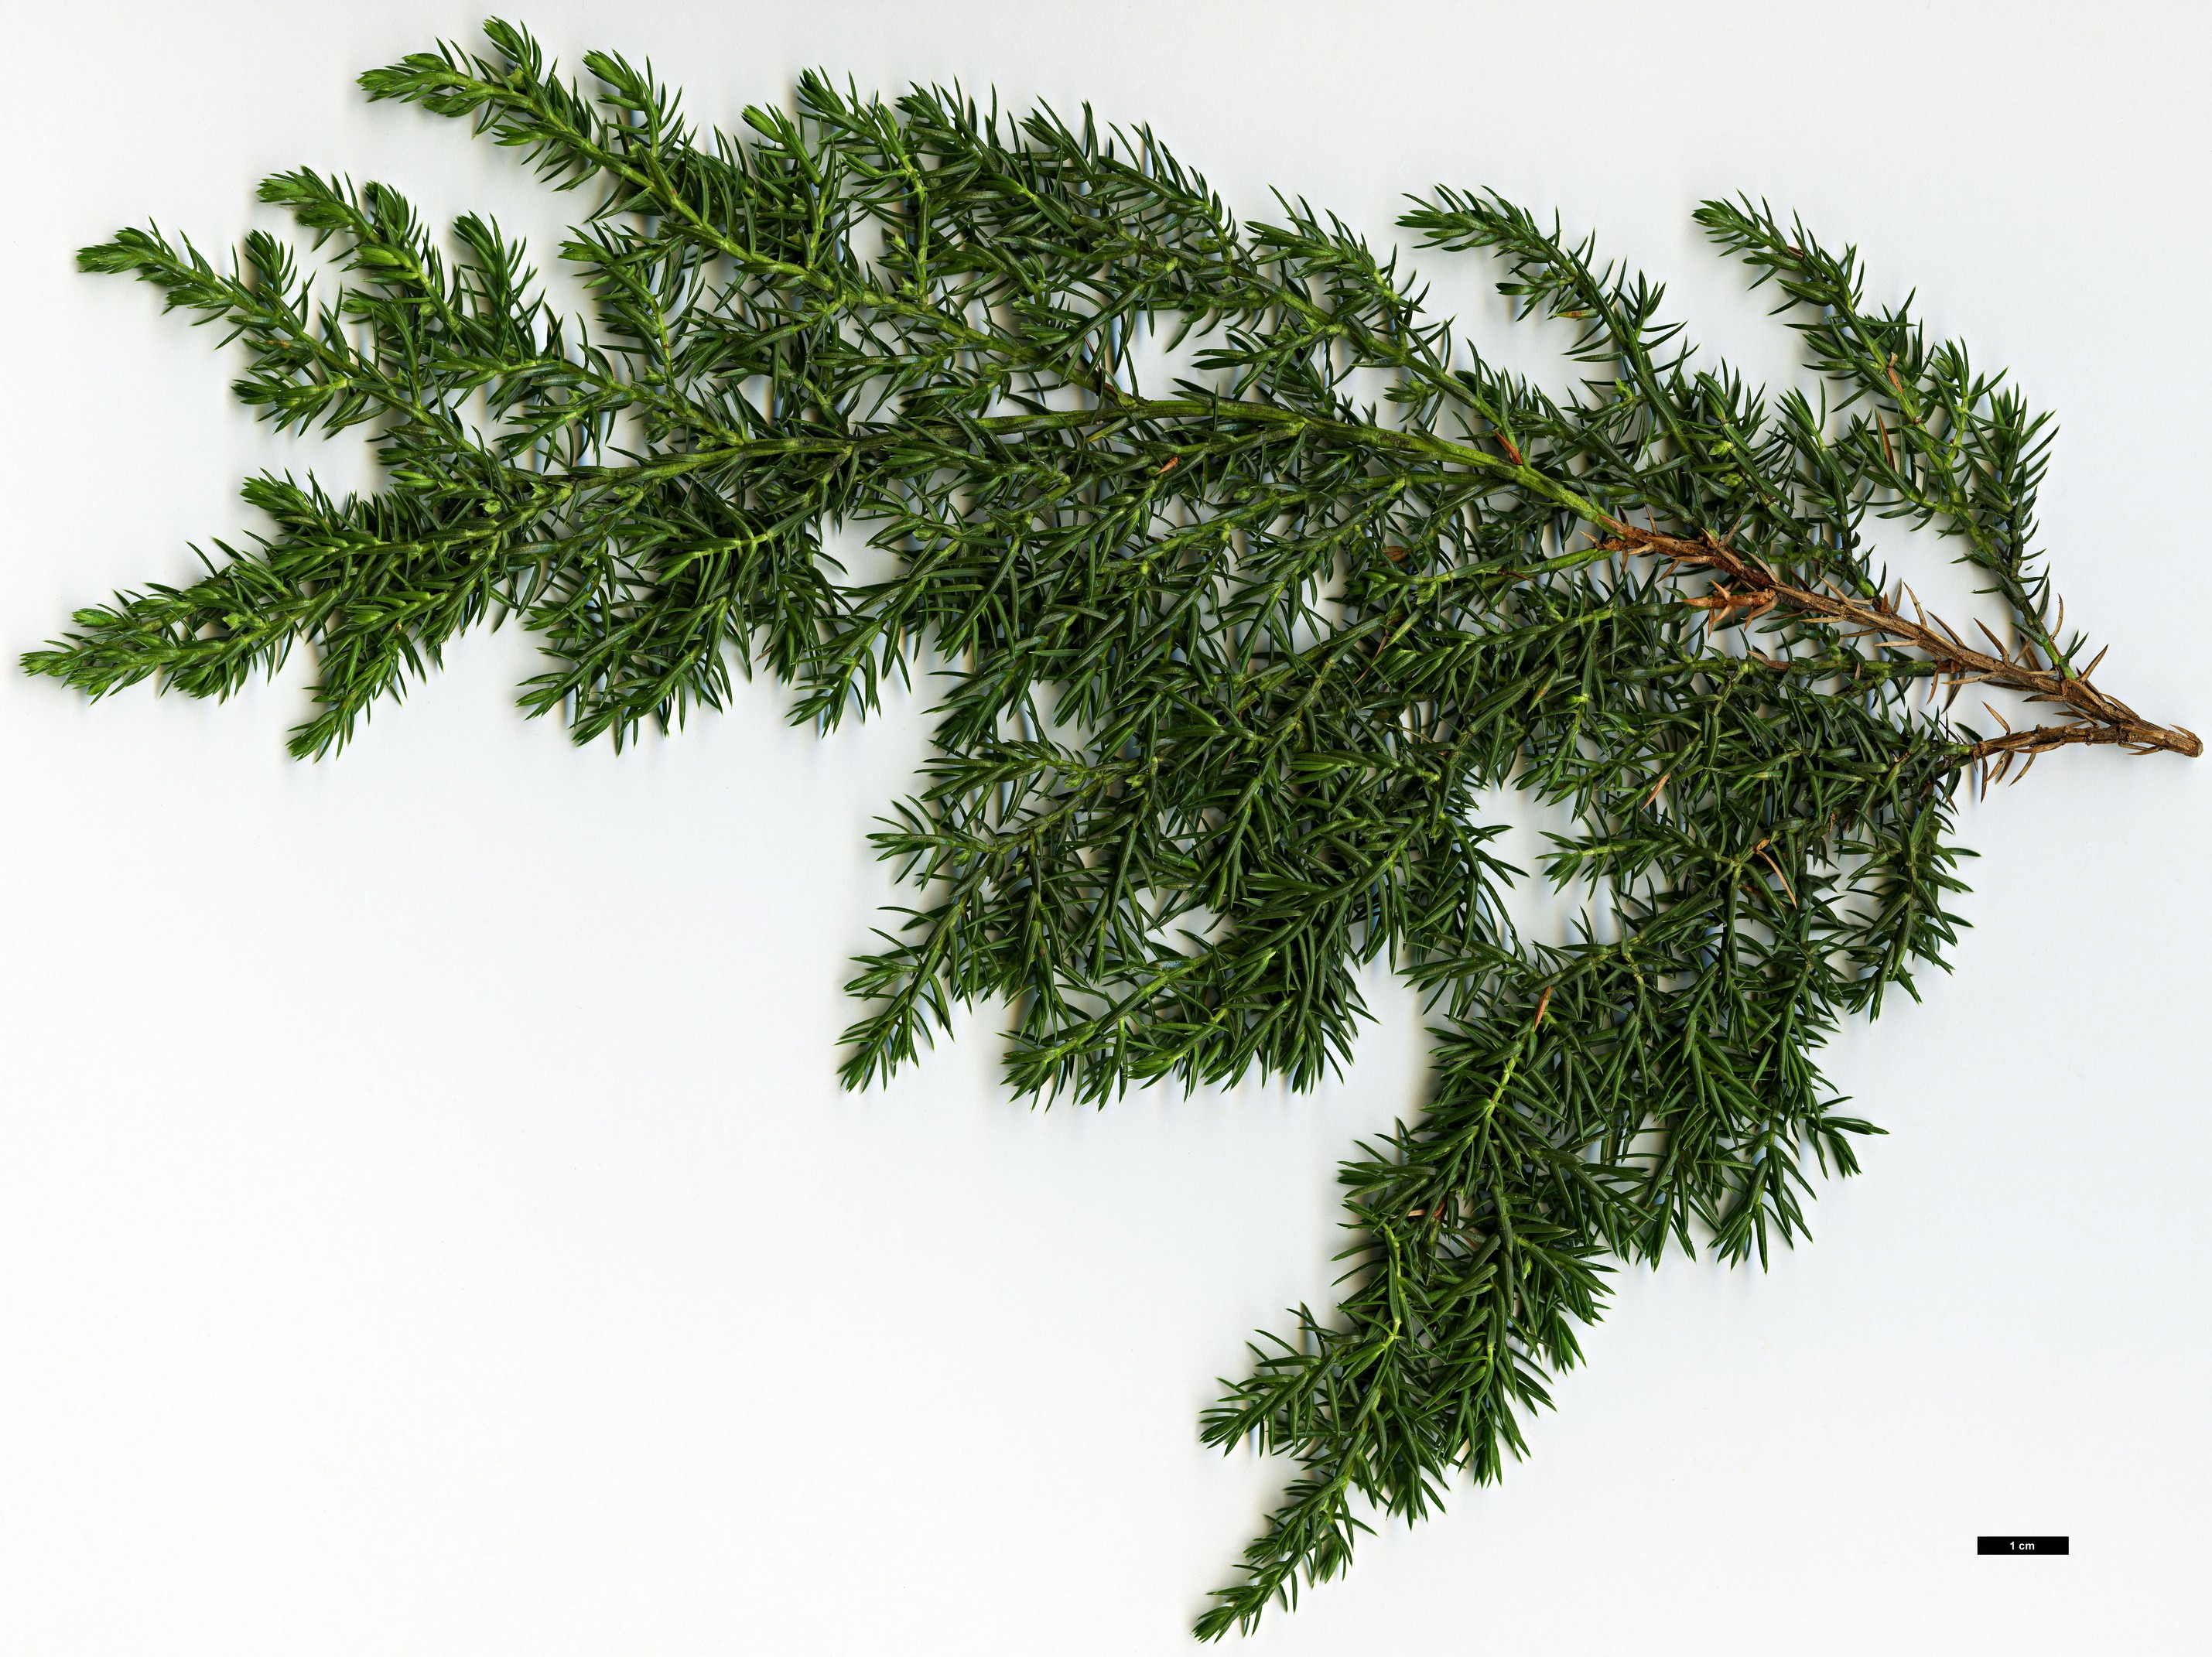 High resolution image: Family: Cupressaceae - Genus: Juniperus - Taxon: squamata - SpeciesSub: var. fargesii